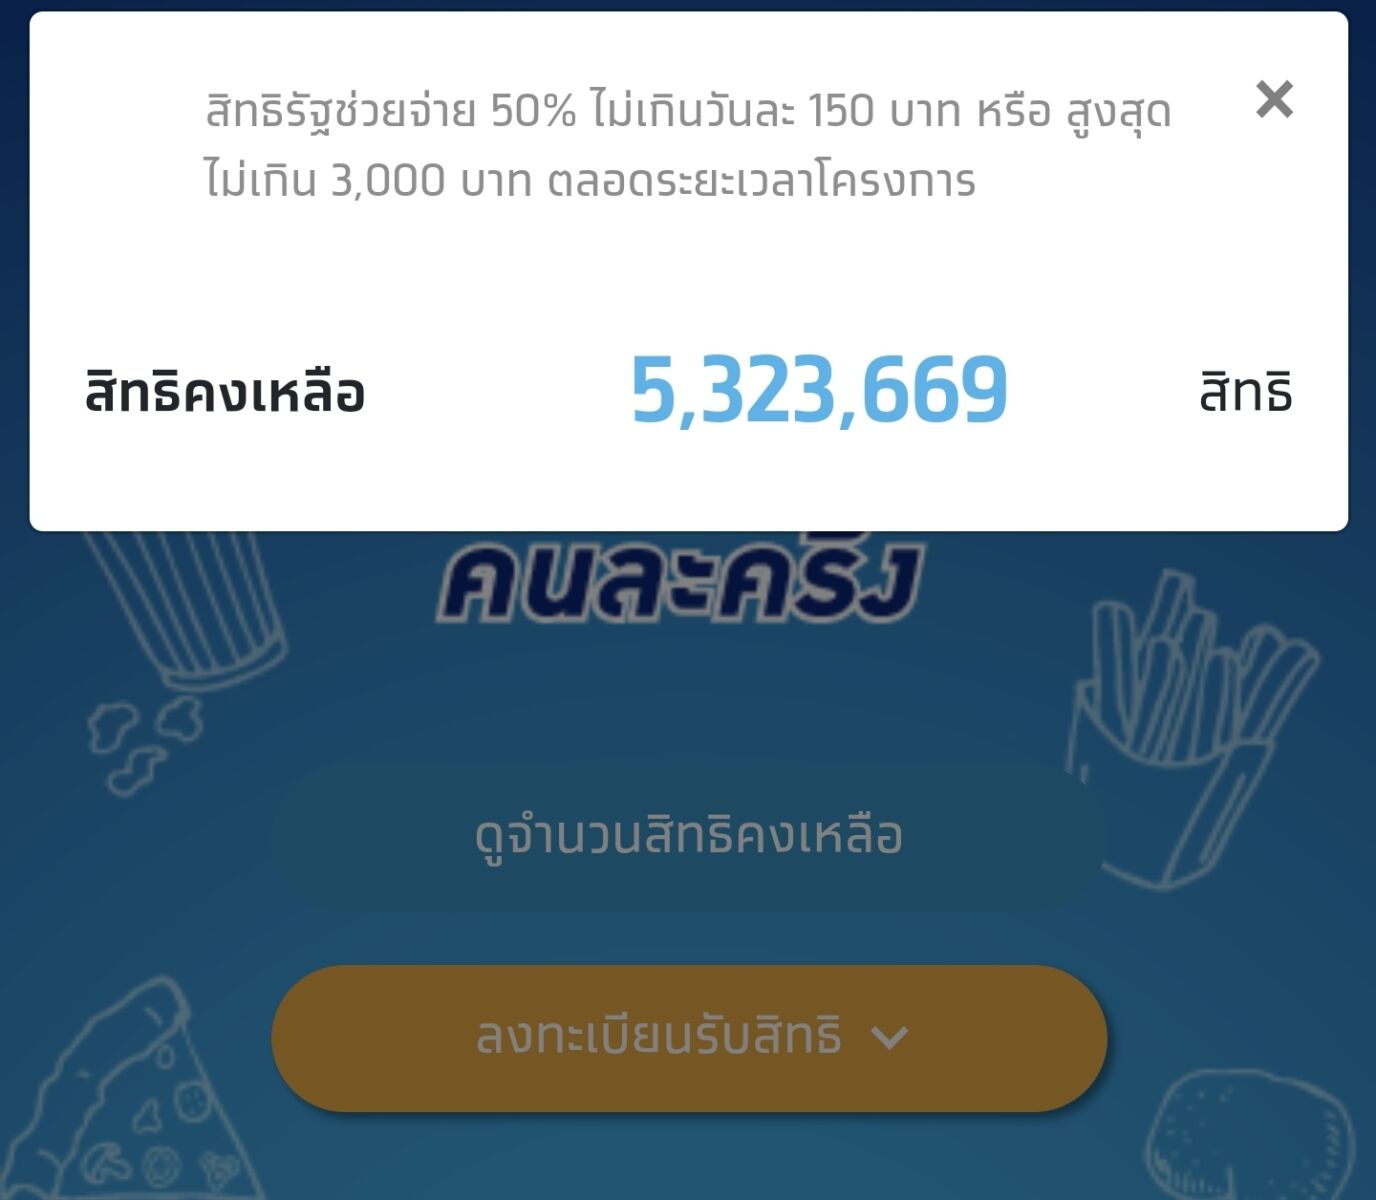 คนละครึ่งเฟส 3 ล่าสุด ยอดลงทะเบียนเหลือ 5 ล้านสิทธิ์ เริ่มส่ง Sms ยืนยัน |  Thaiger ข่าวไทย